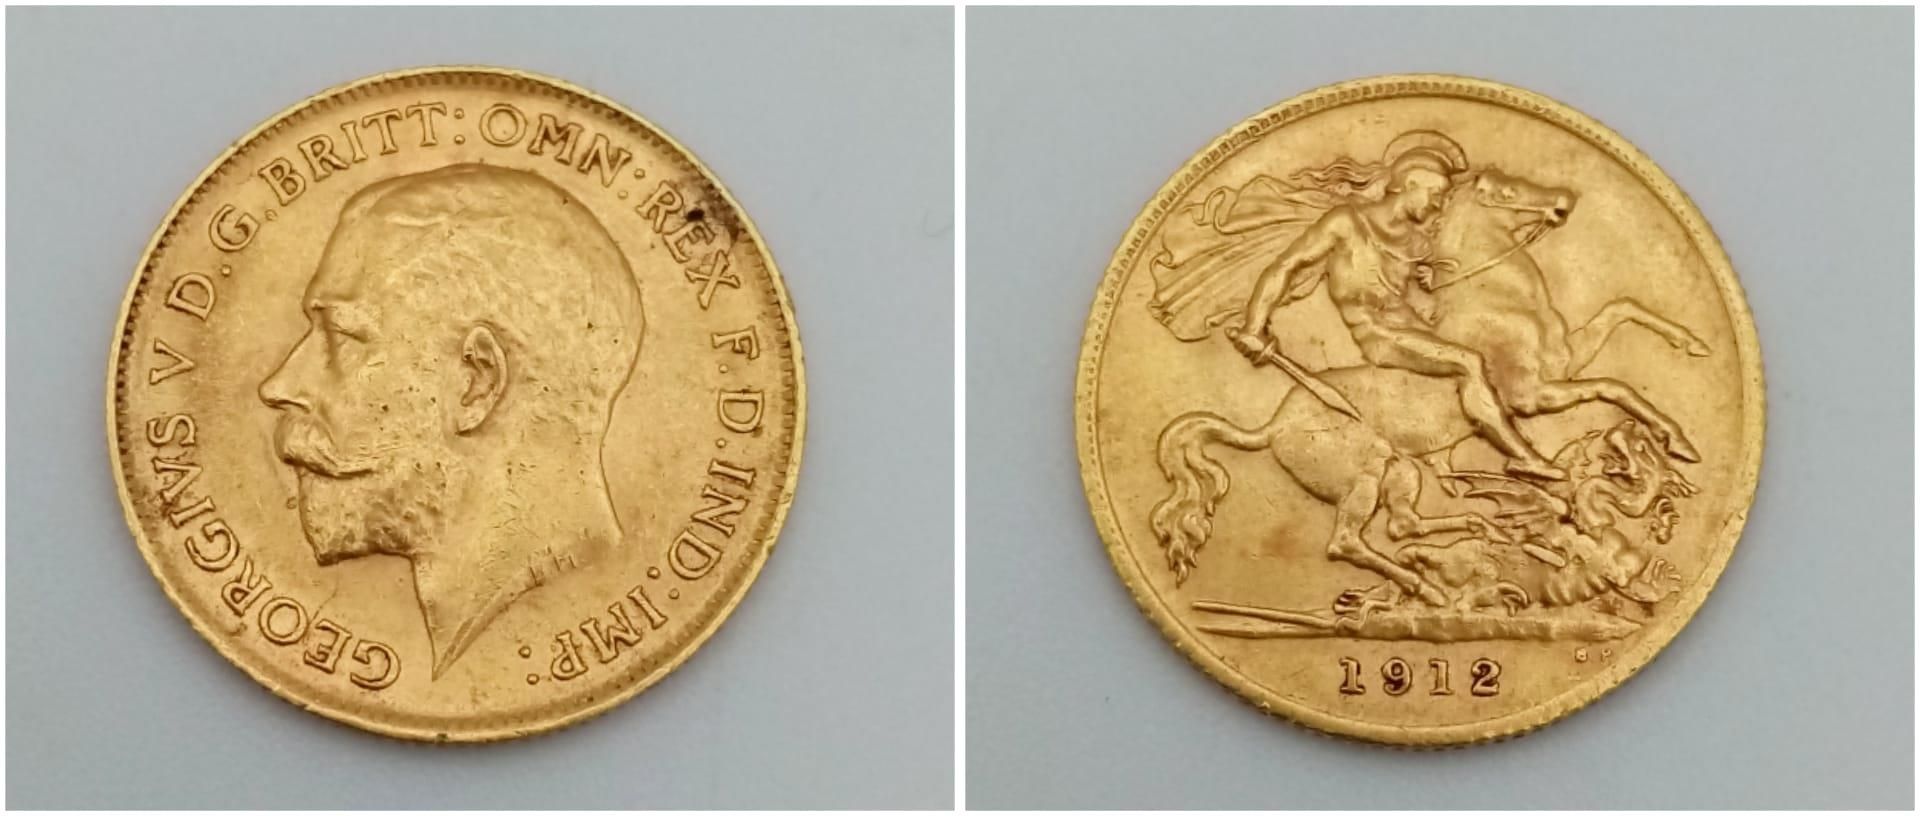 A 1912 22K Gold George V Half Sovereign.